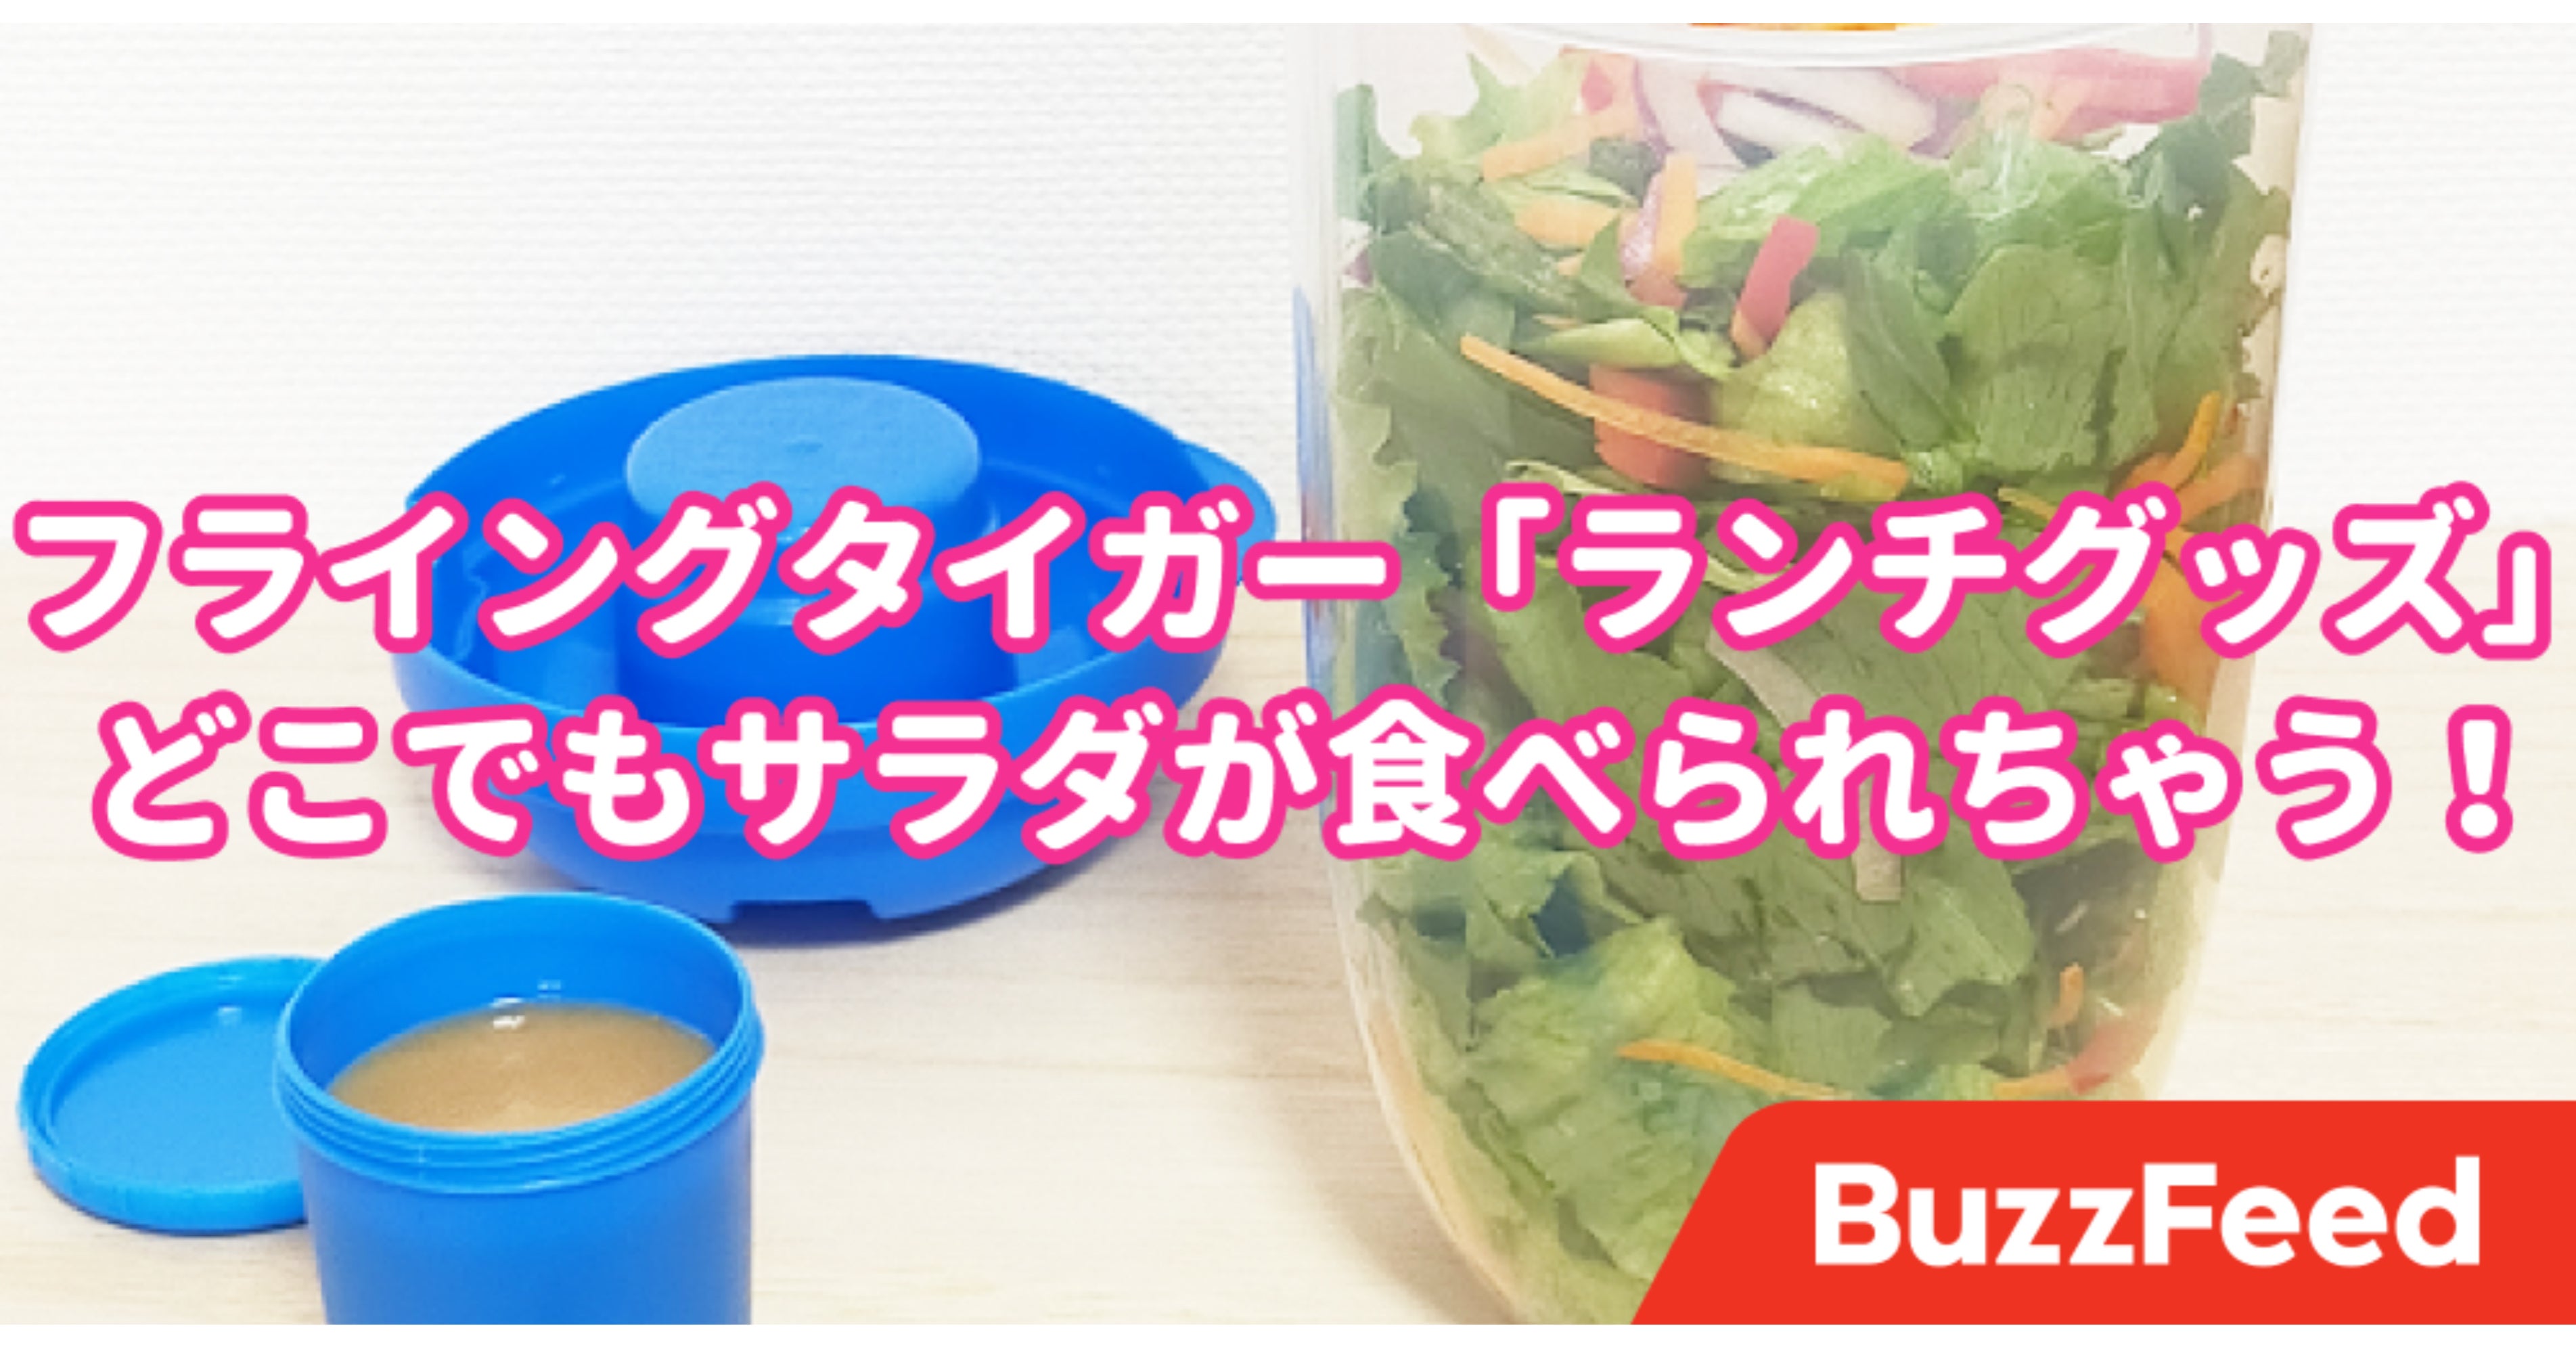 これで250円は優秀 フライングタイガーの サラダコンテナ で野菜をたくさん食べるようになった